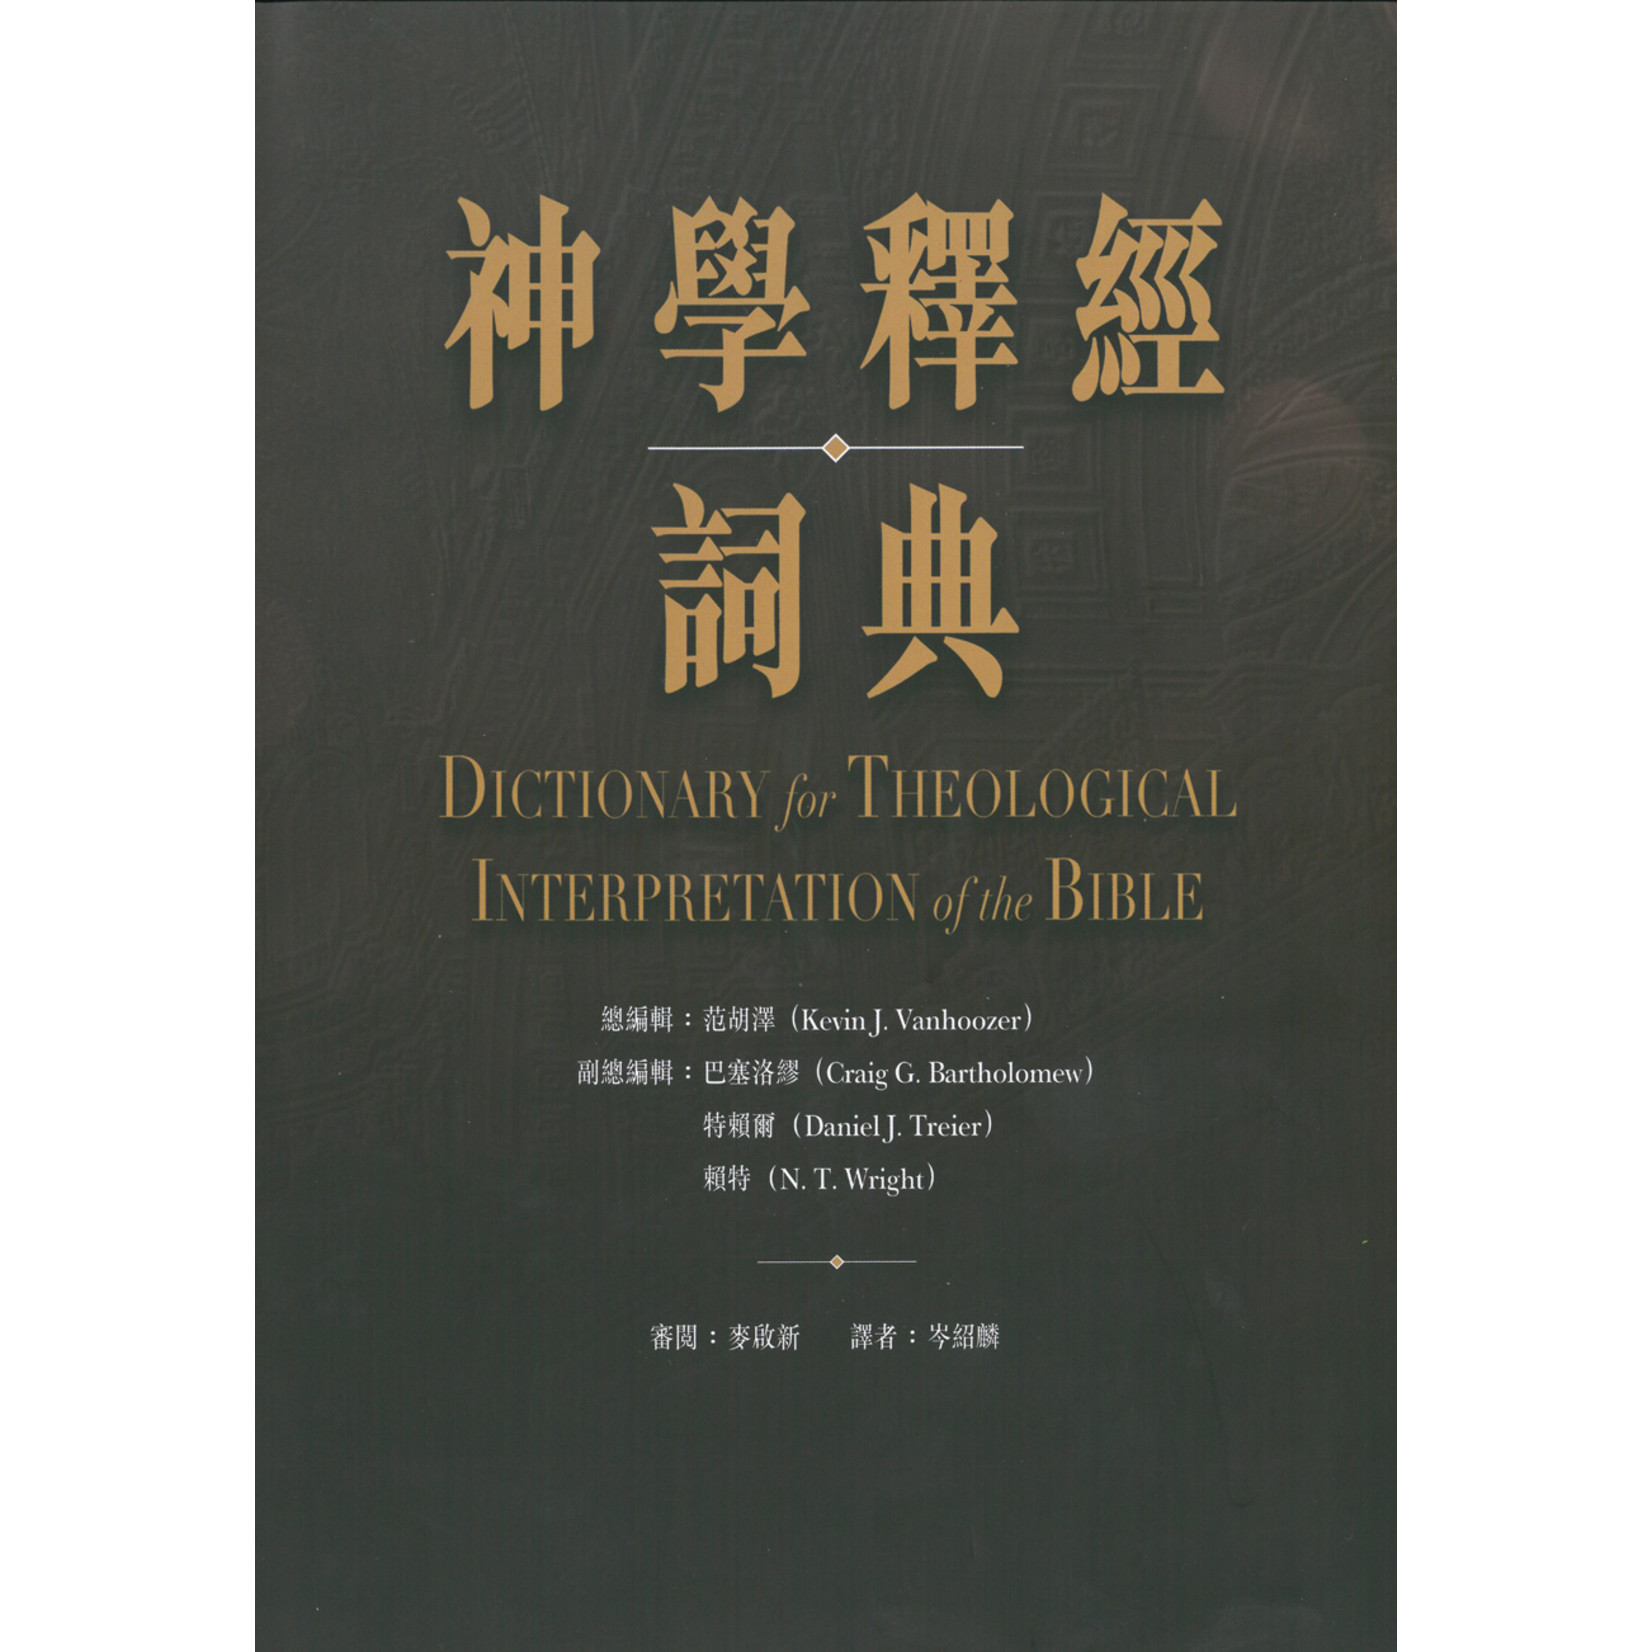 漢語聖經協會 Chinese Bible International 神學釋經詞典 Dictionary for Theological Interpretation of the Bible (DTI)